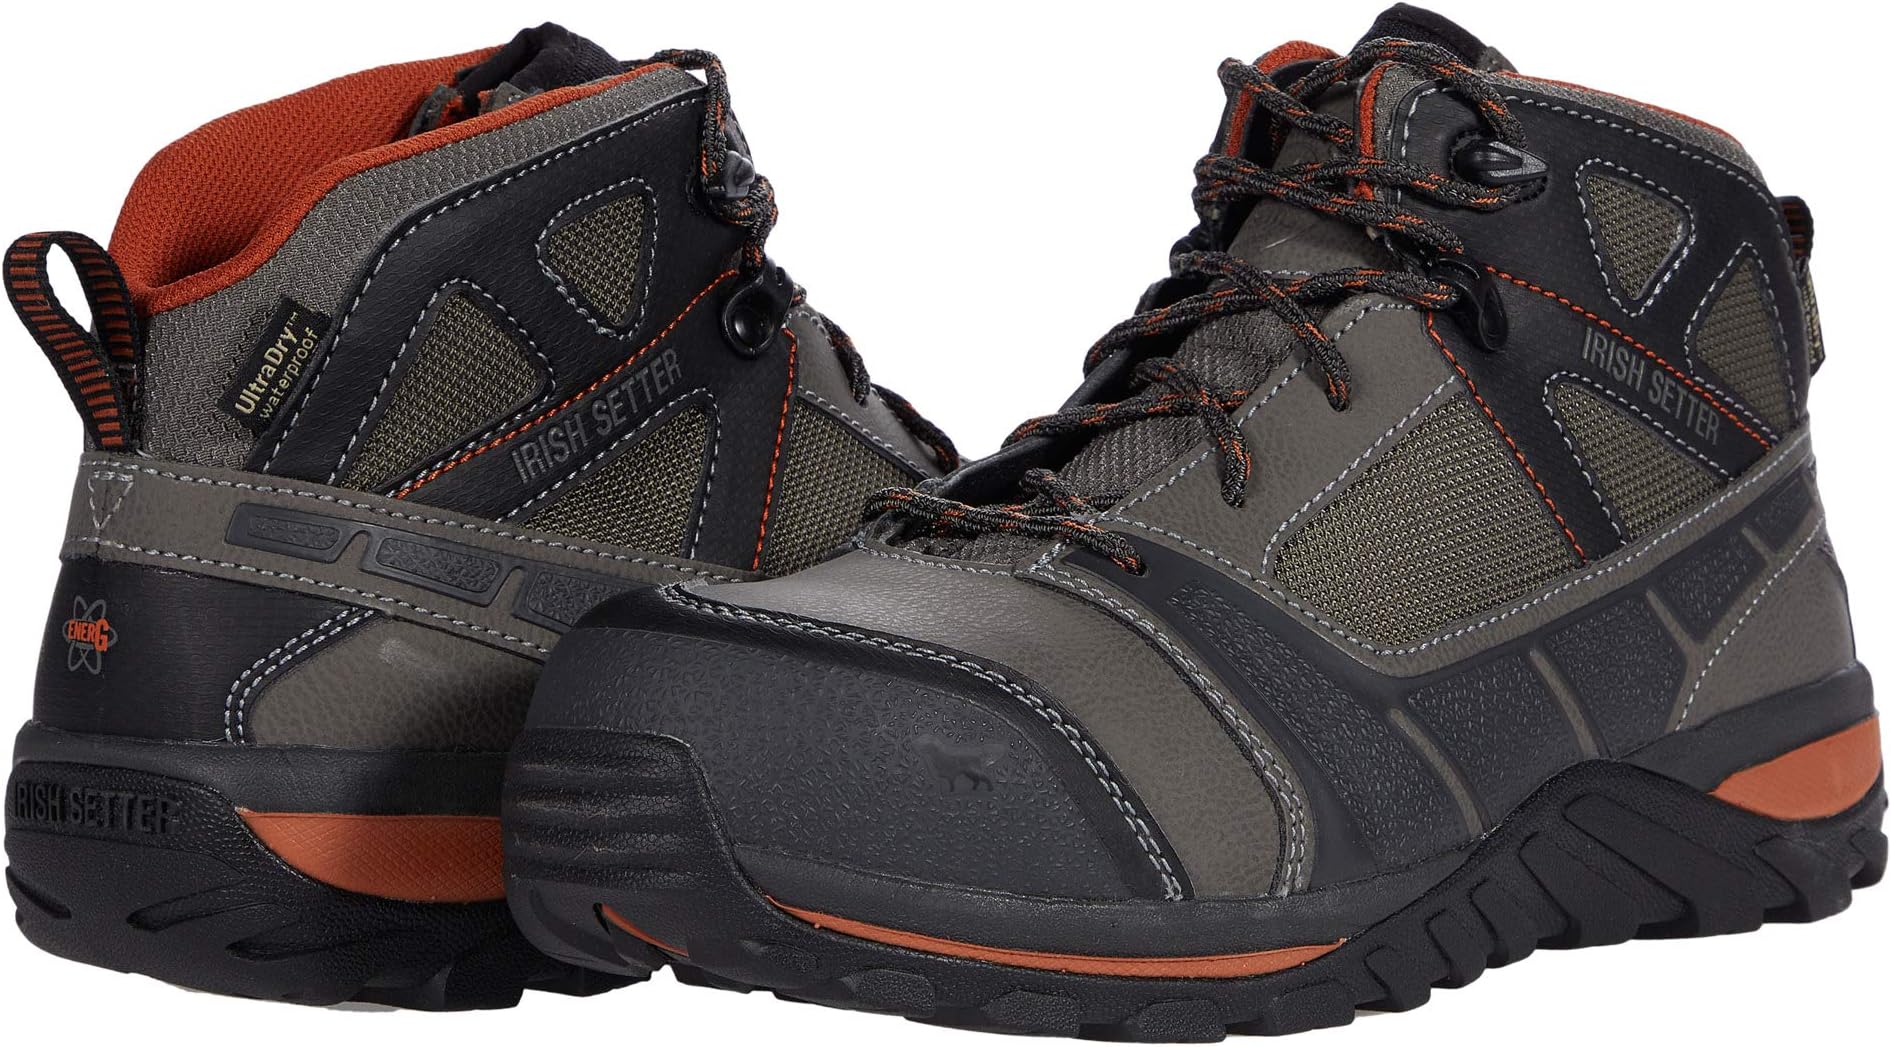 Рабочая обувь водонепроницаемая с композитным носком Rockford 5 Waterproof Composite-Toe EH Irish Setter, цвет Brown/Orange